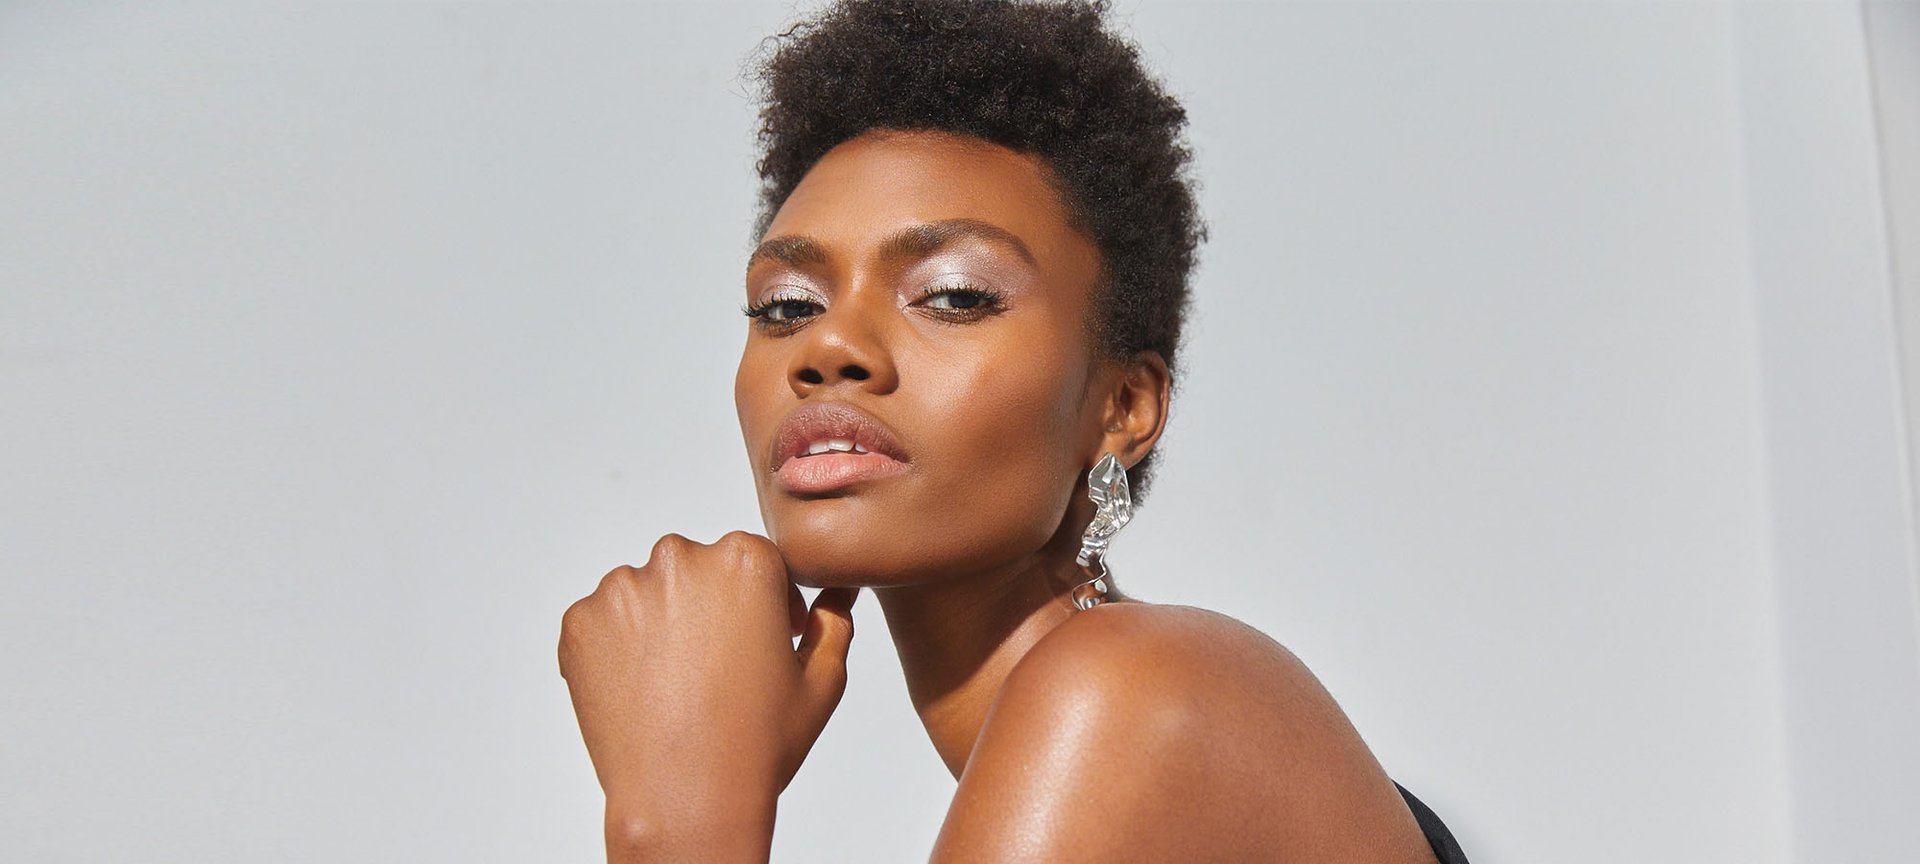 Best Short Hairstyles for Black Women - L'Oréal Paris